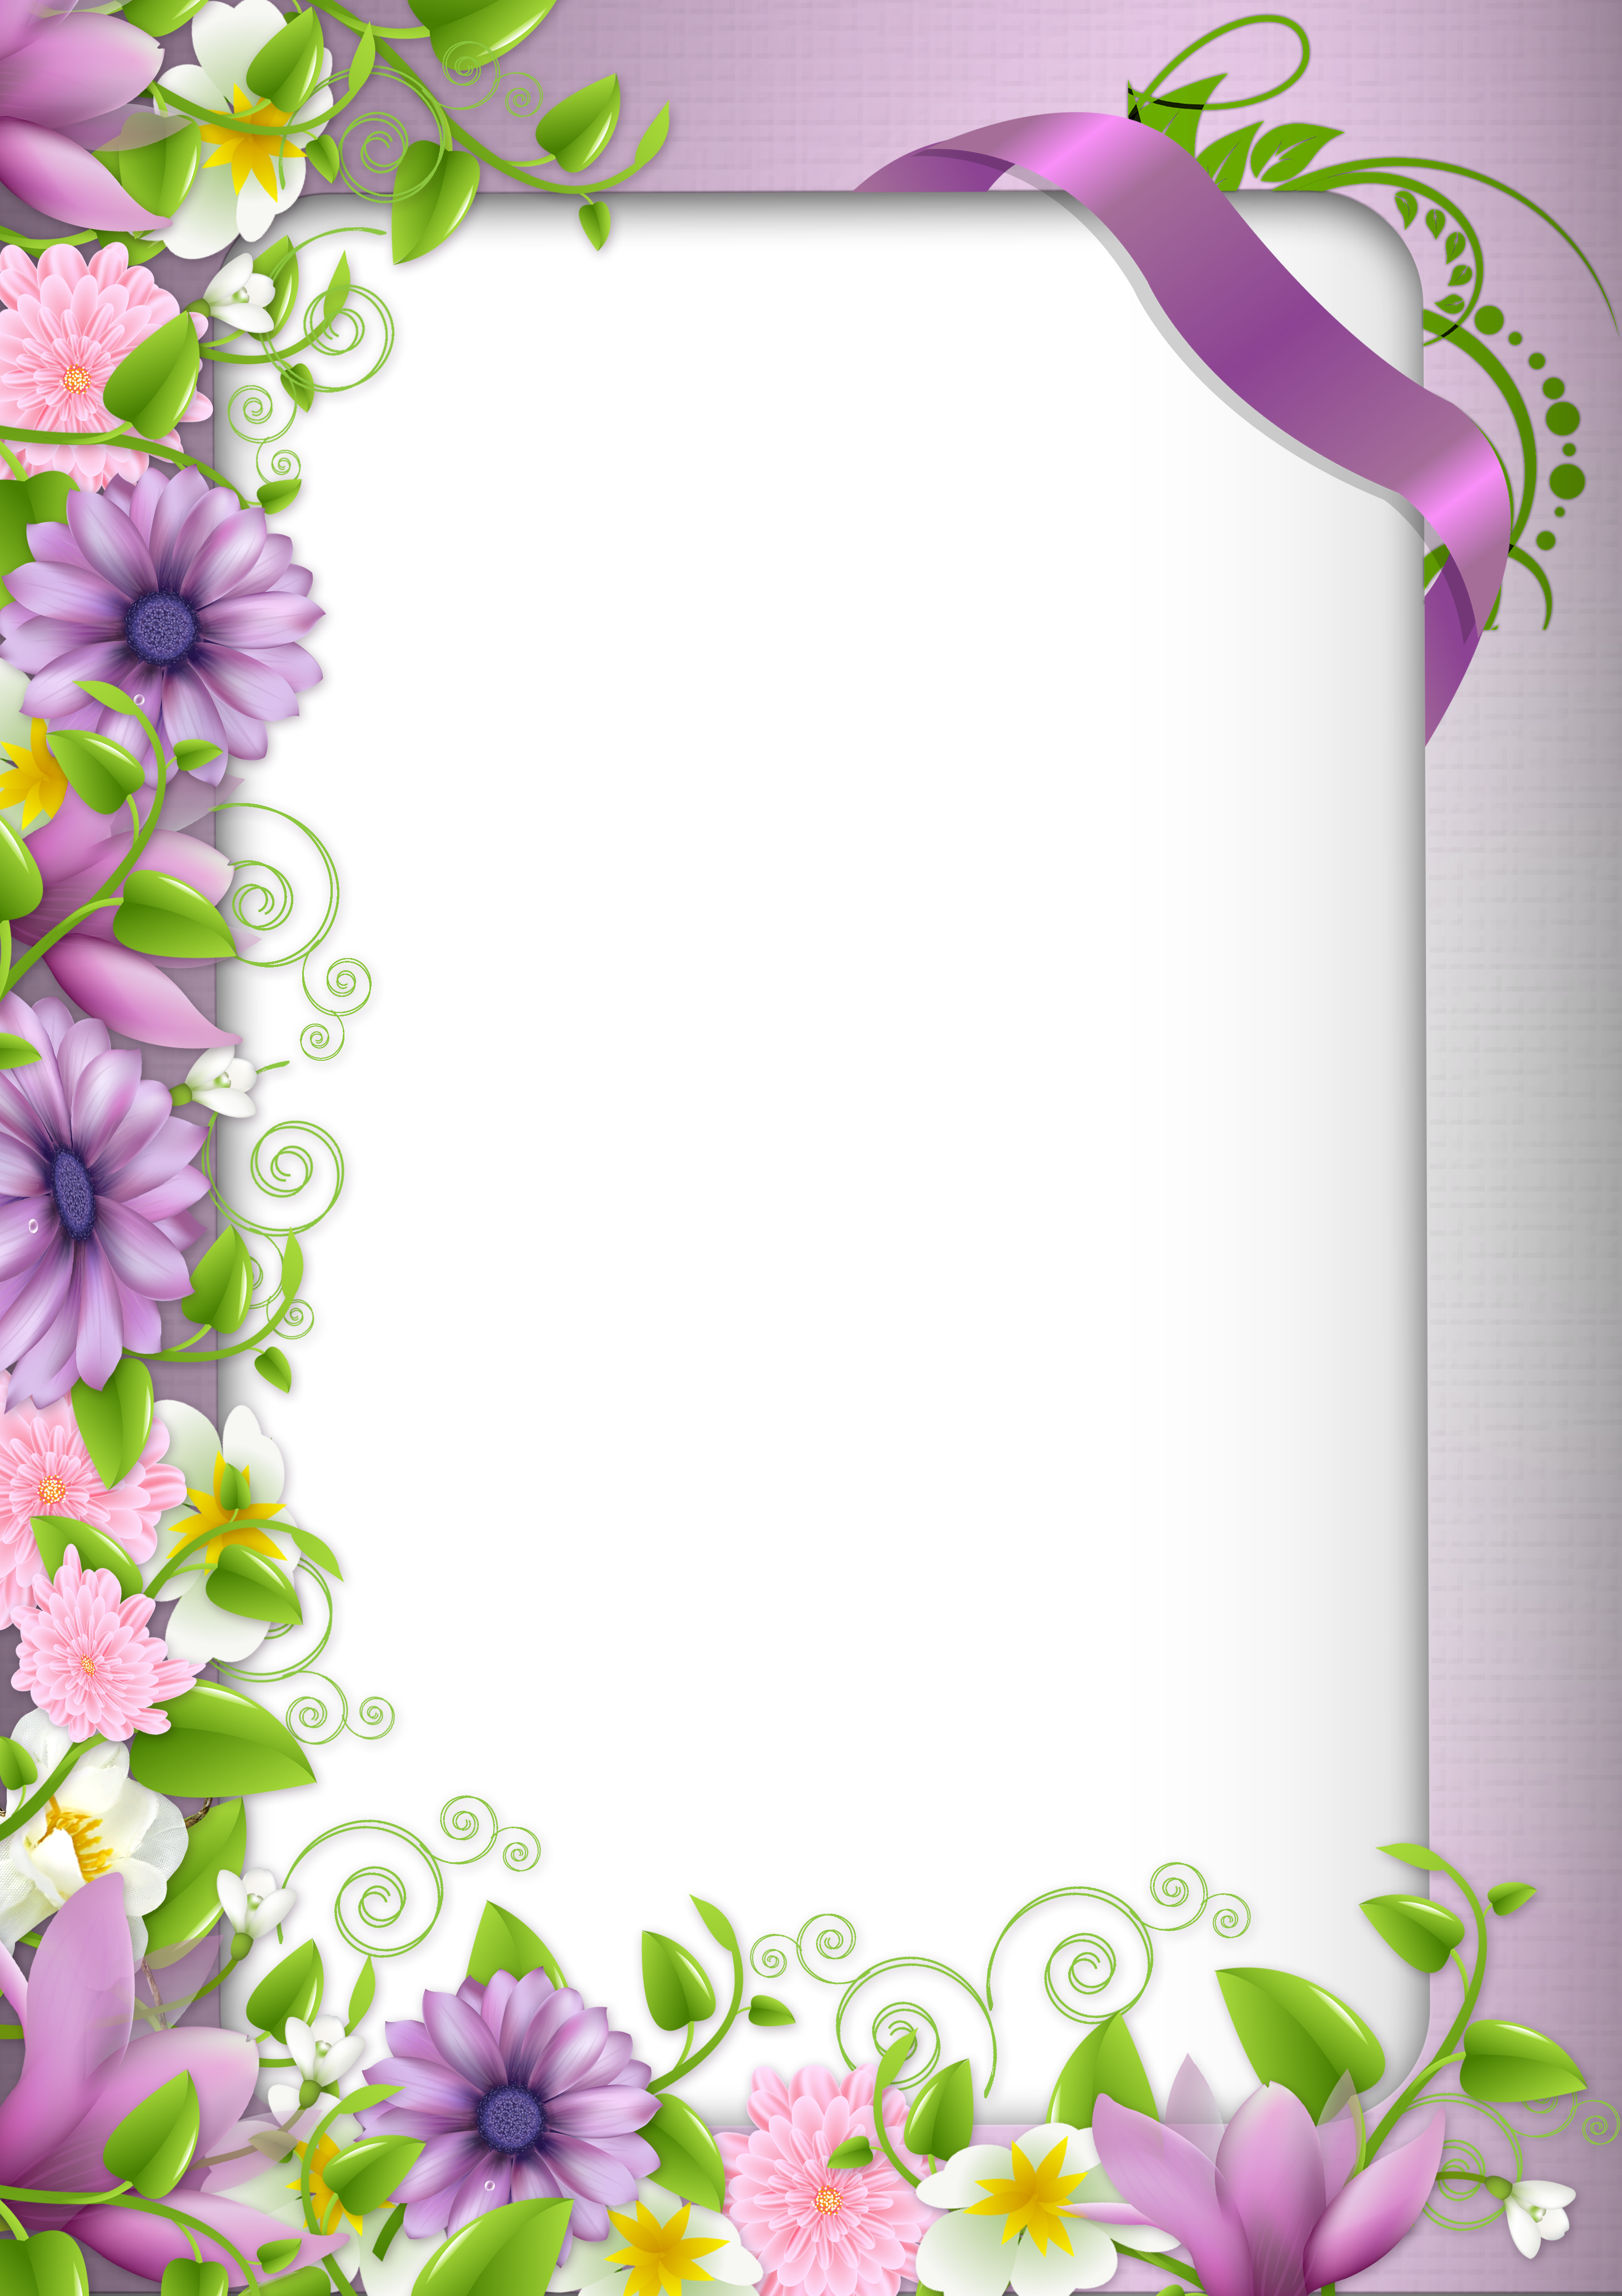 Download PNG image - Flower Border Frame Clipart Transparent PNG 